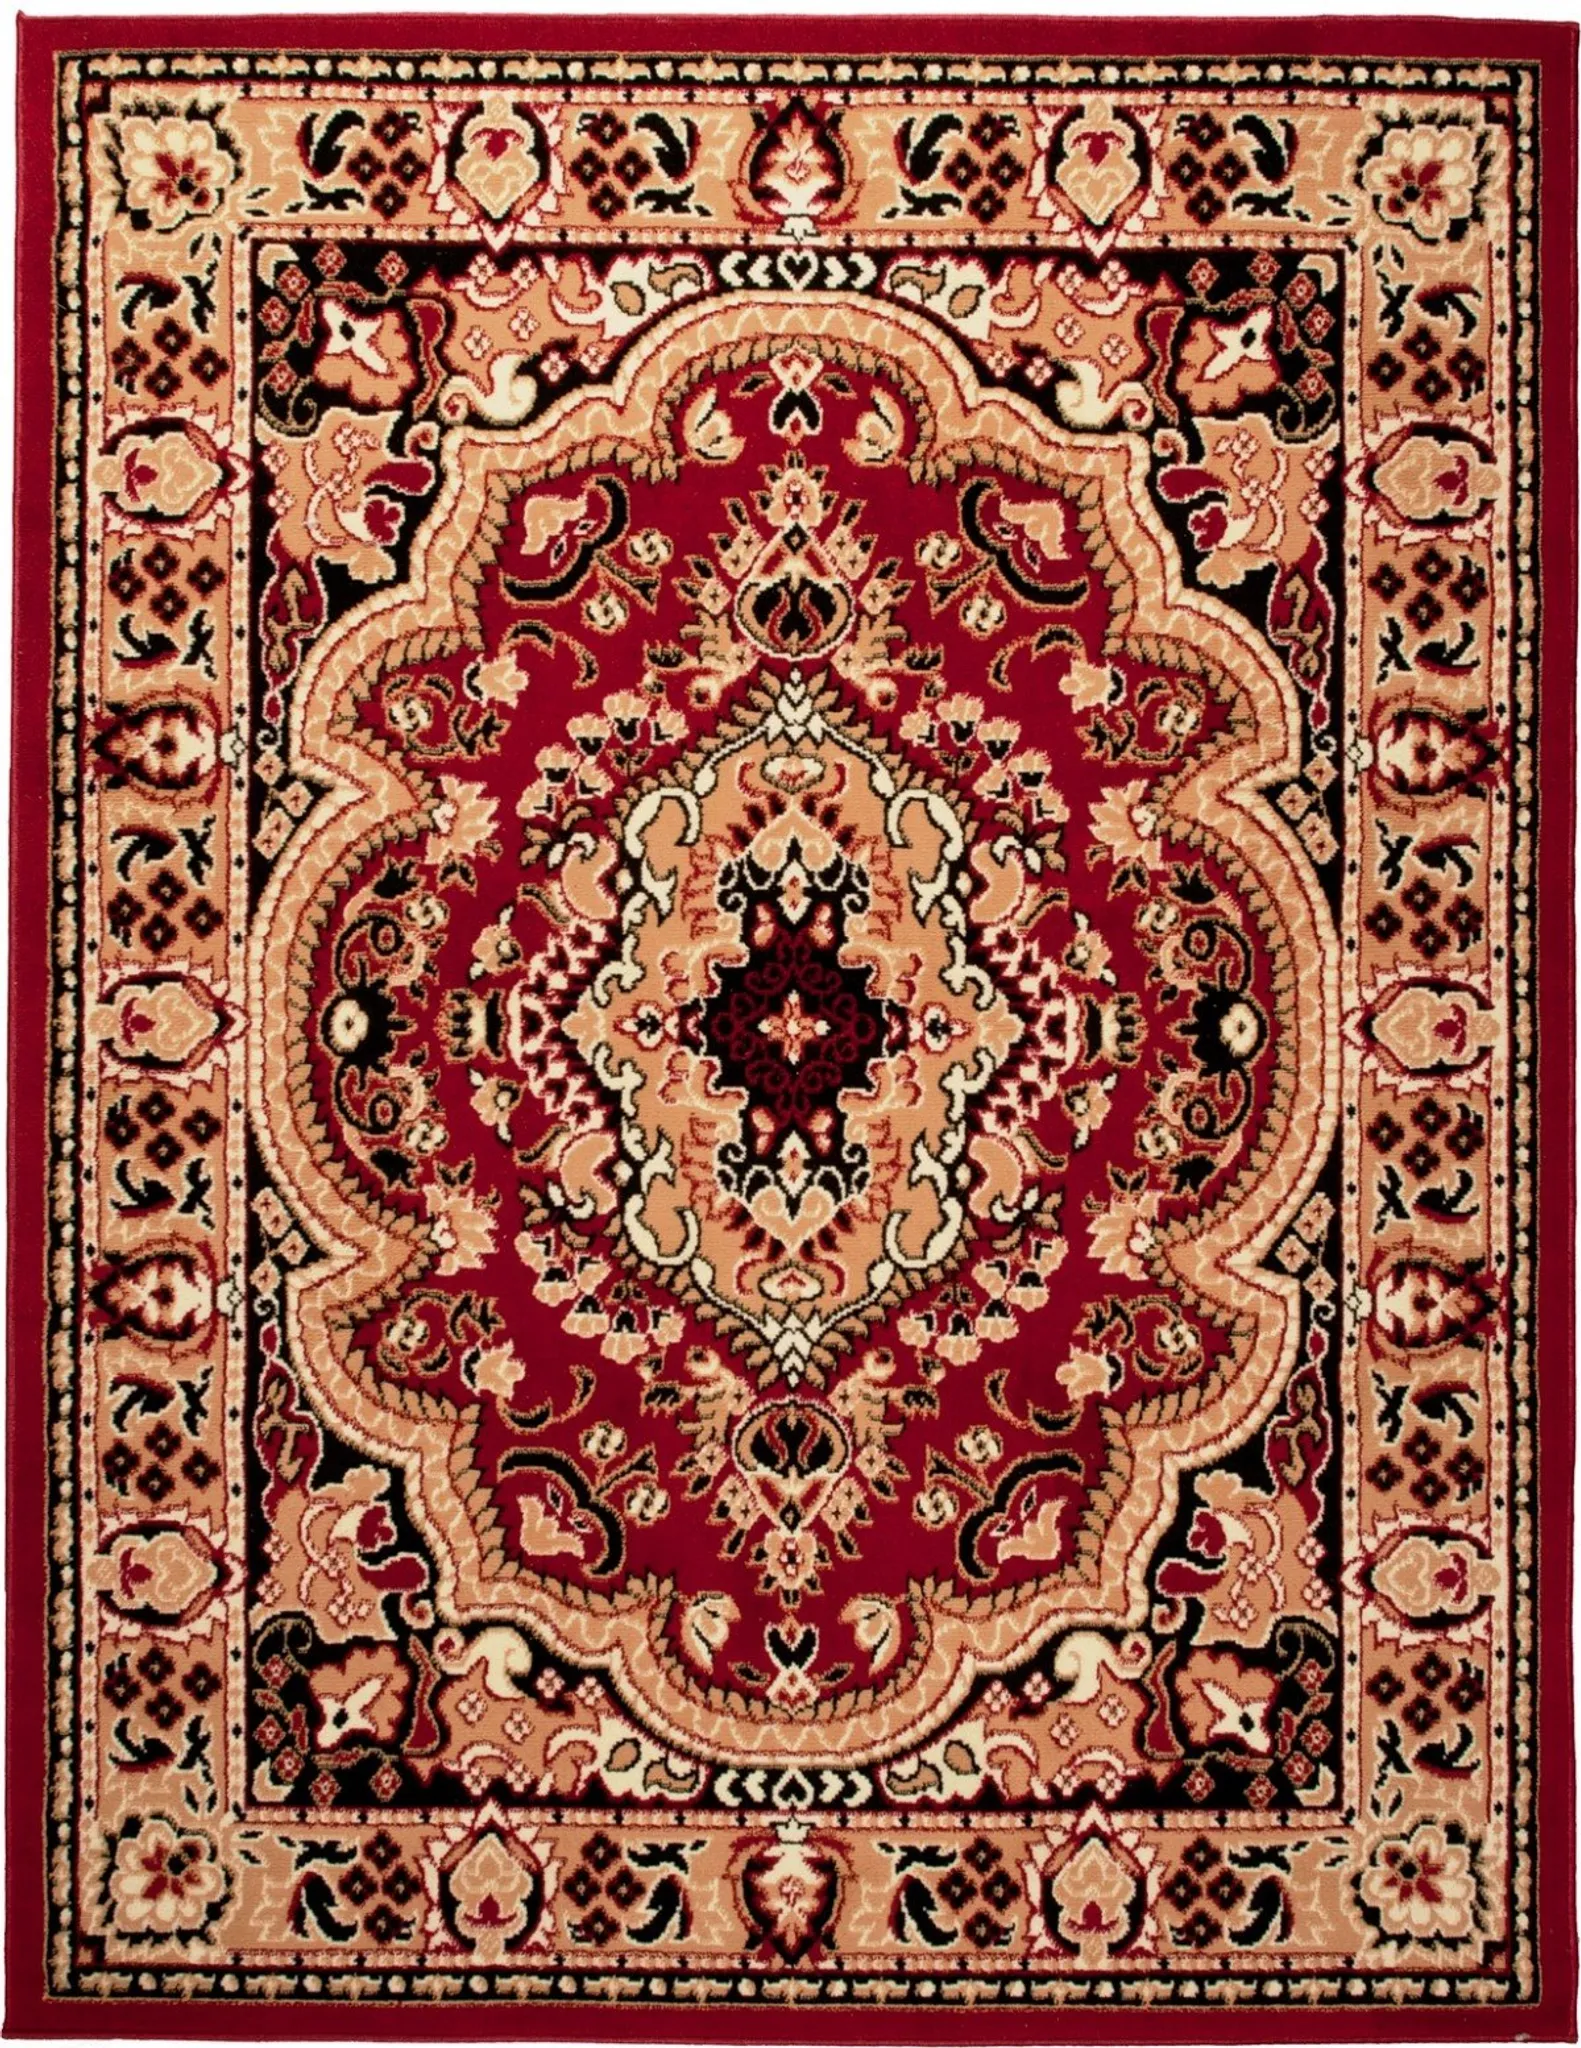 Orient Teppich rot beige klassisch dicht gewebt mit Ornament und